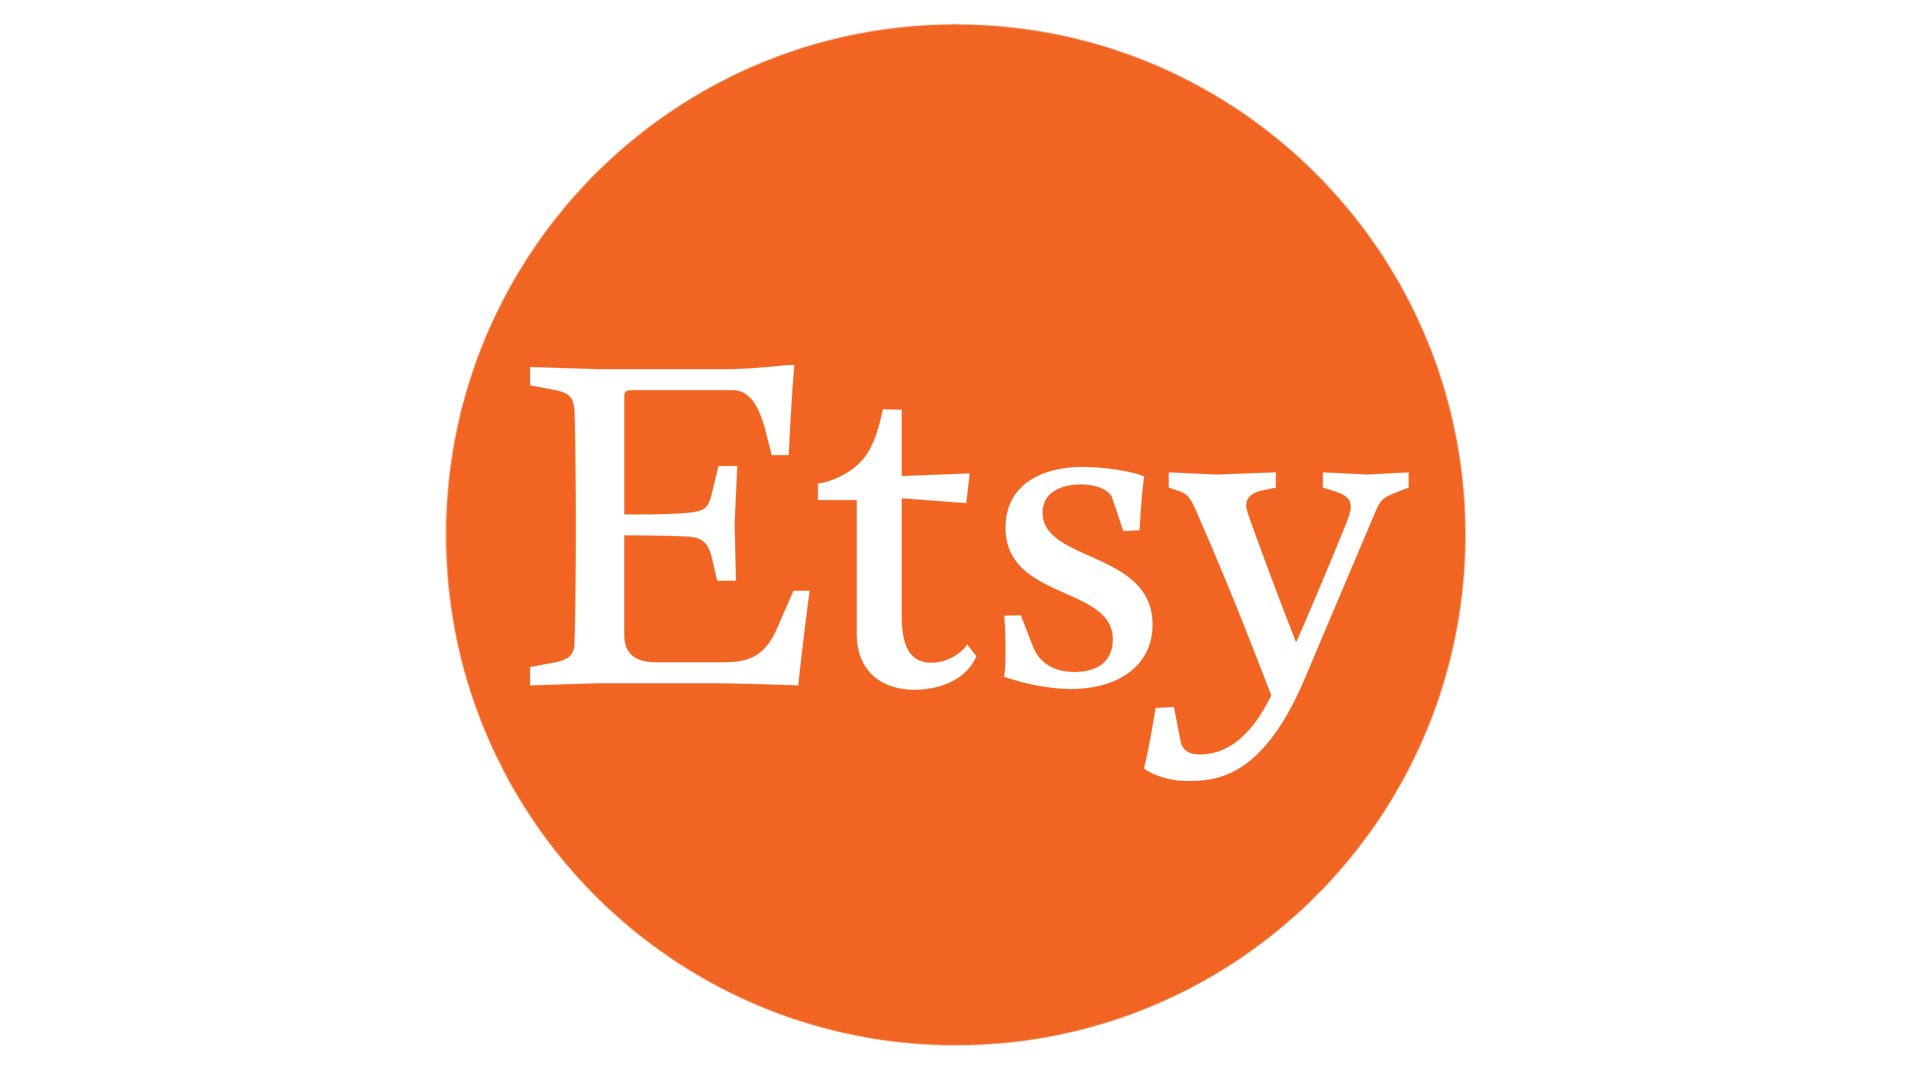 Etsy, Inc